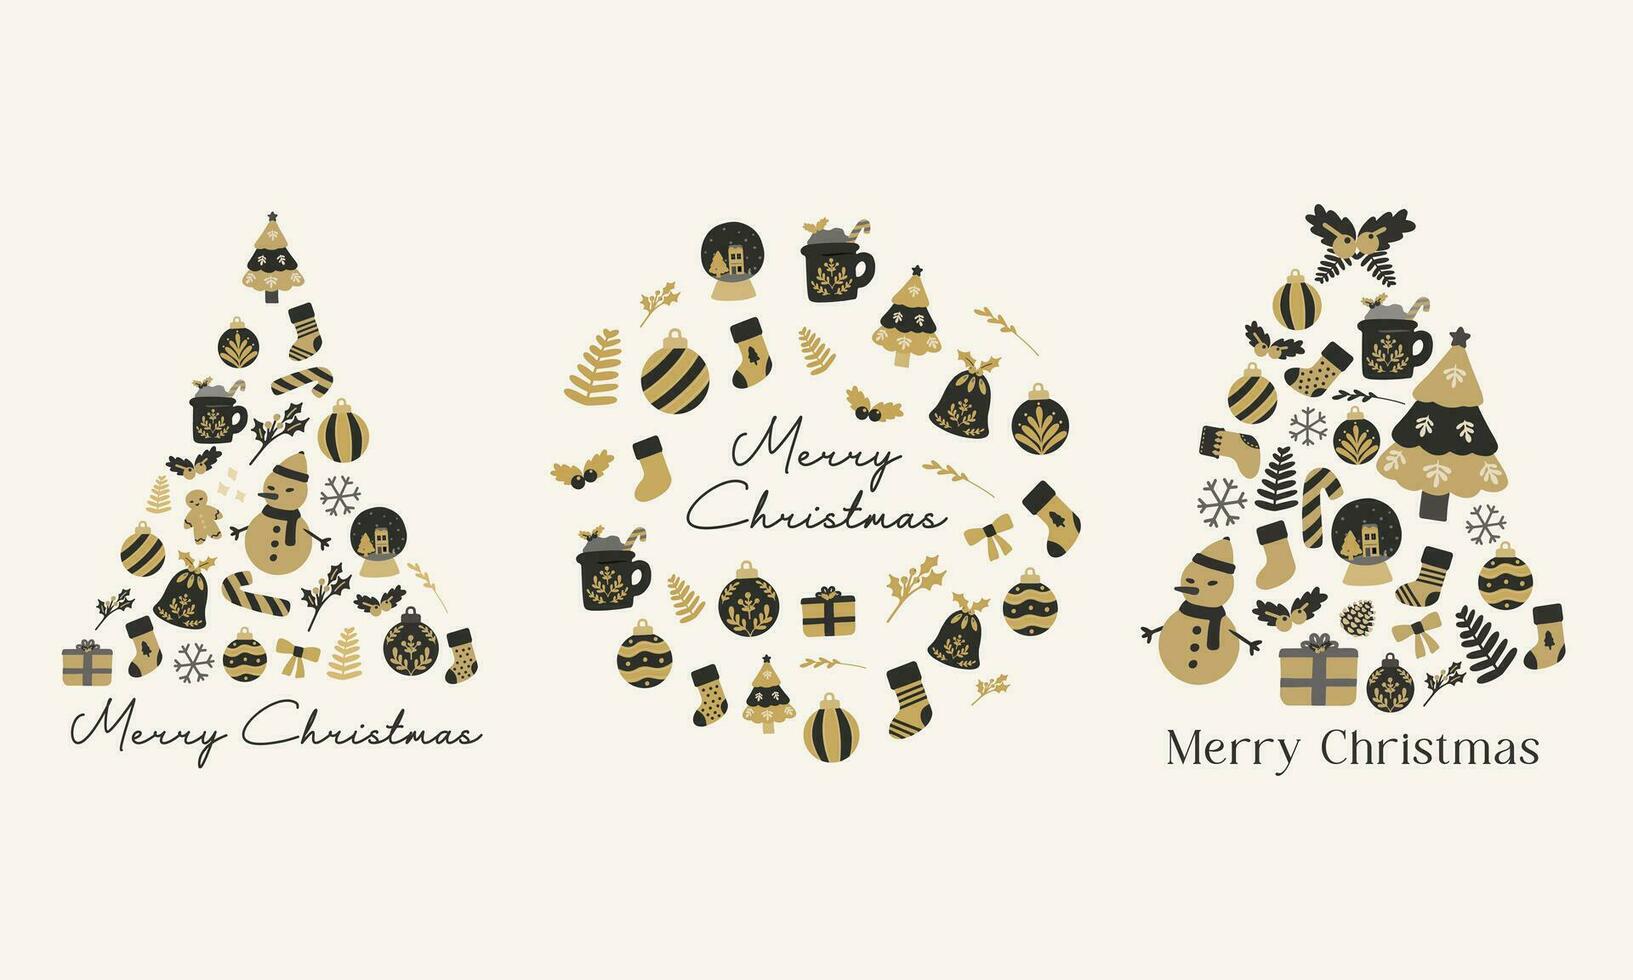 jul träd collage av jul element samling. svart och guld hand dragen vektor platt illustration. för vinter- affisch, kort, scrapbooking, inbjudan, social media, posta, grafik